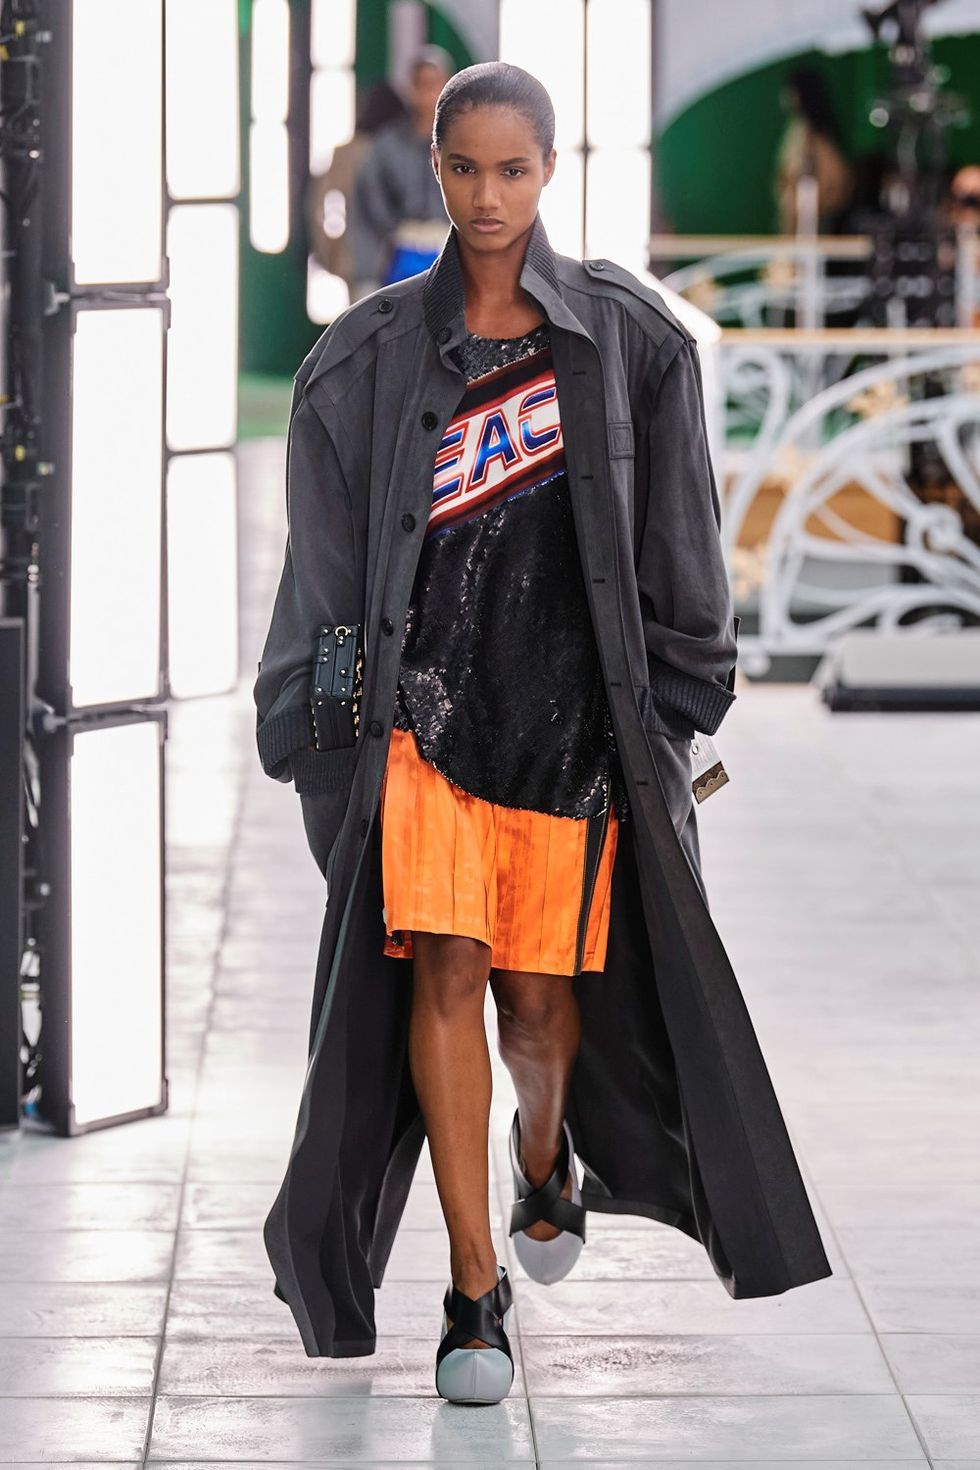 Pantaloni primavera estate 2021: i modelli della sfilata Louis Vuitton